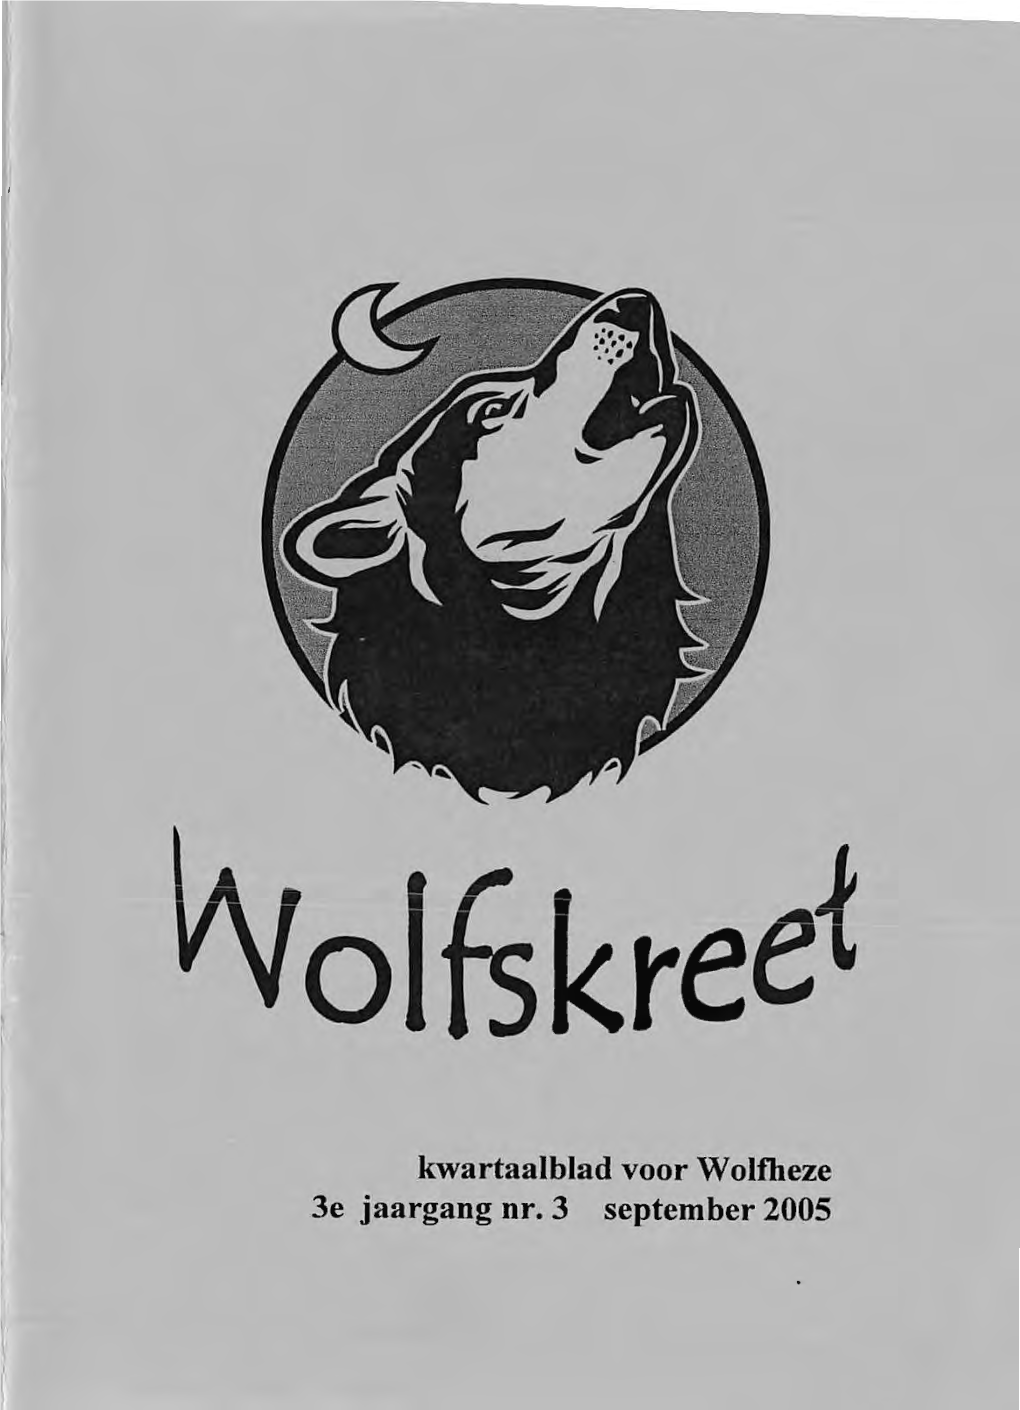 Wolfskreet 11, September 2005